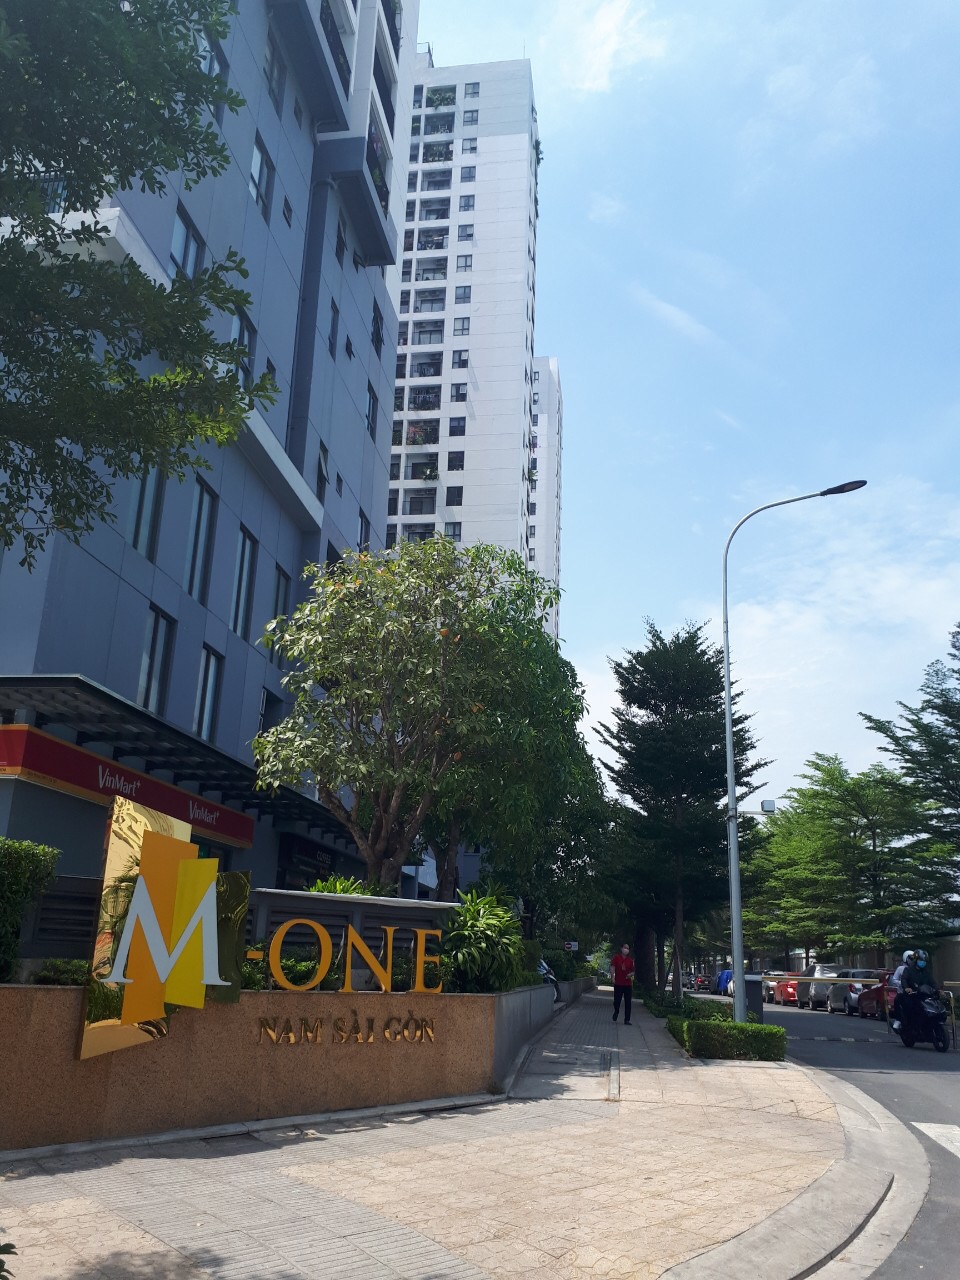 Tranh chấp giữa cư dân và ban quản trị tại chung cư M-One Nam Sài Gòn. 